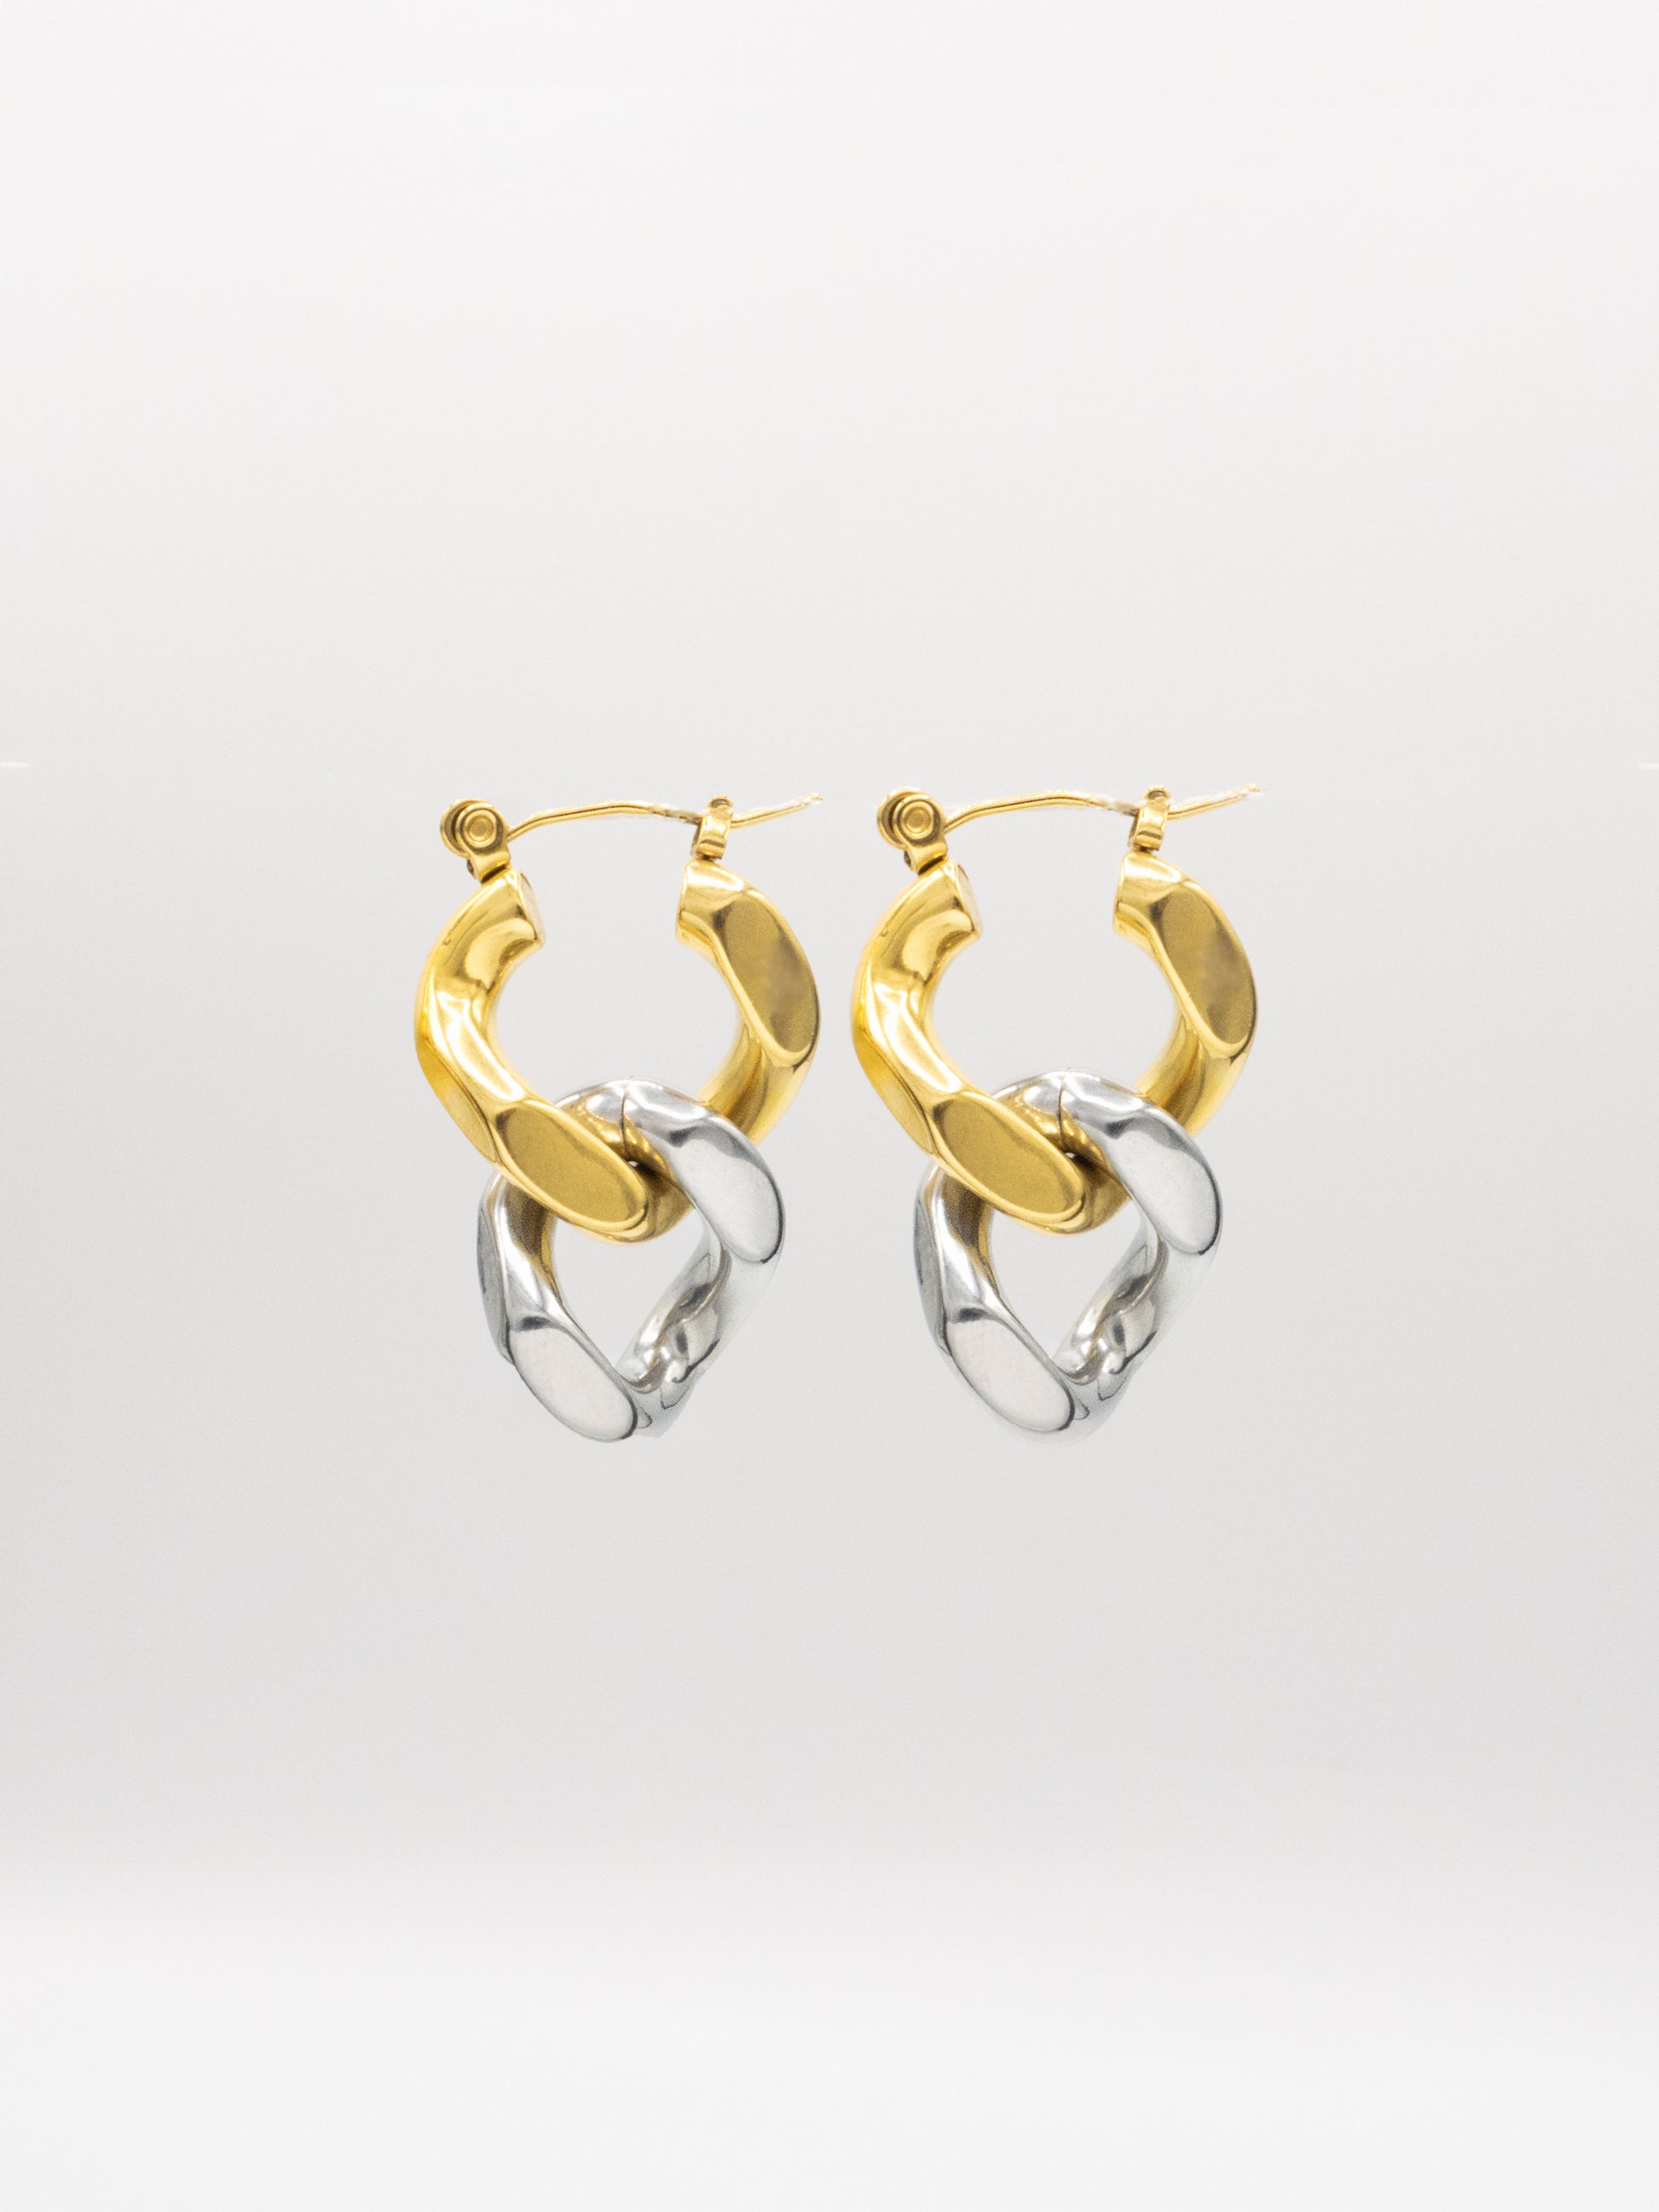 DEUX TONE EARRINGS | 18K Gold & Silver - LILÈ - Earring - LILÈ - online jewellery store - jewelry online - affordable jewellery online Australia